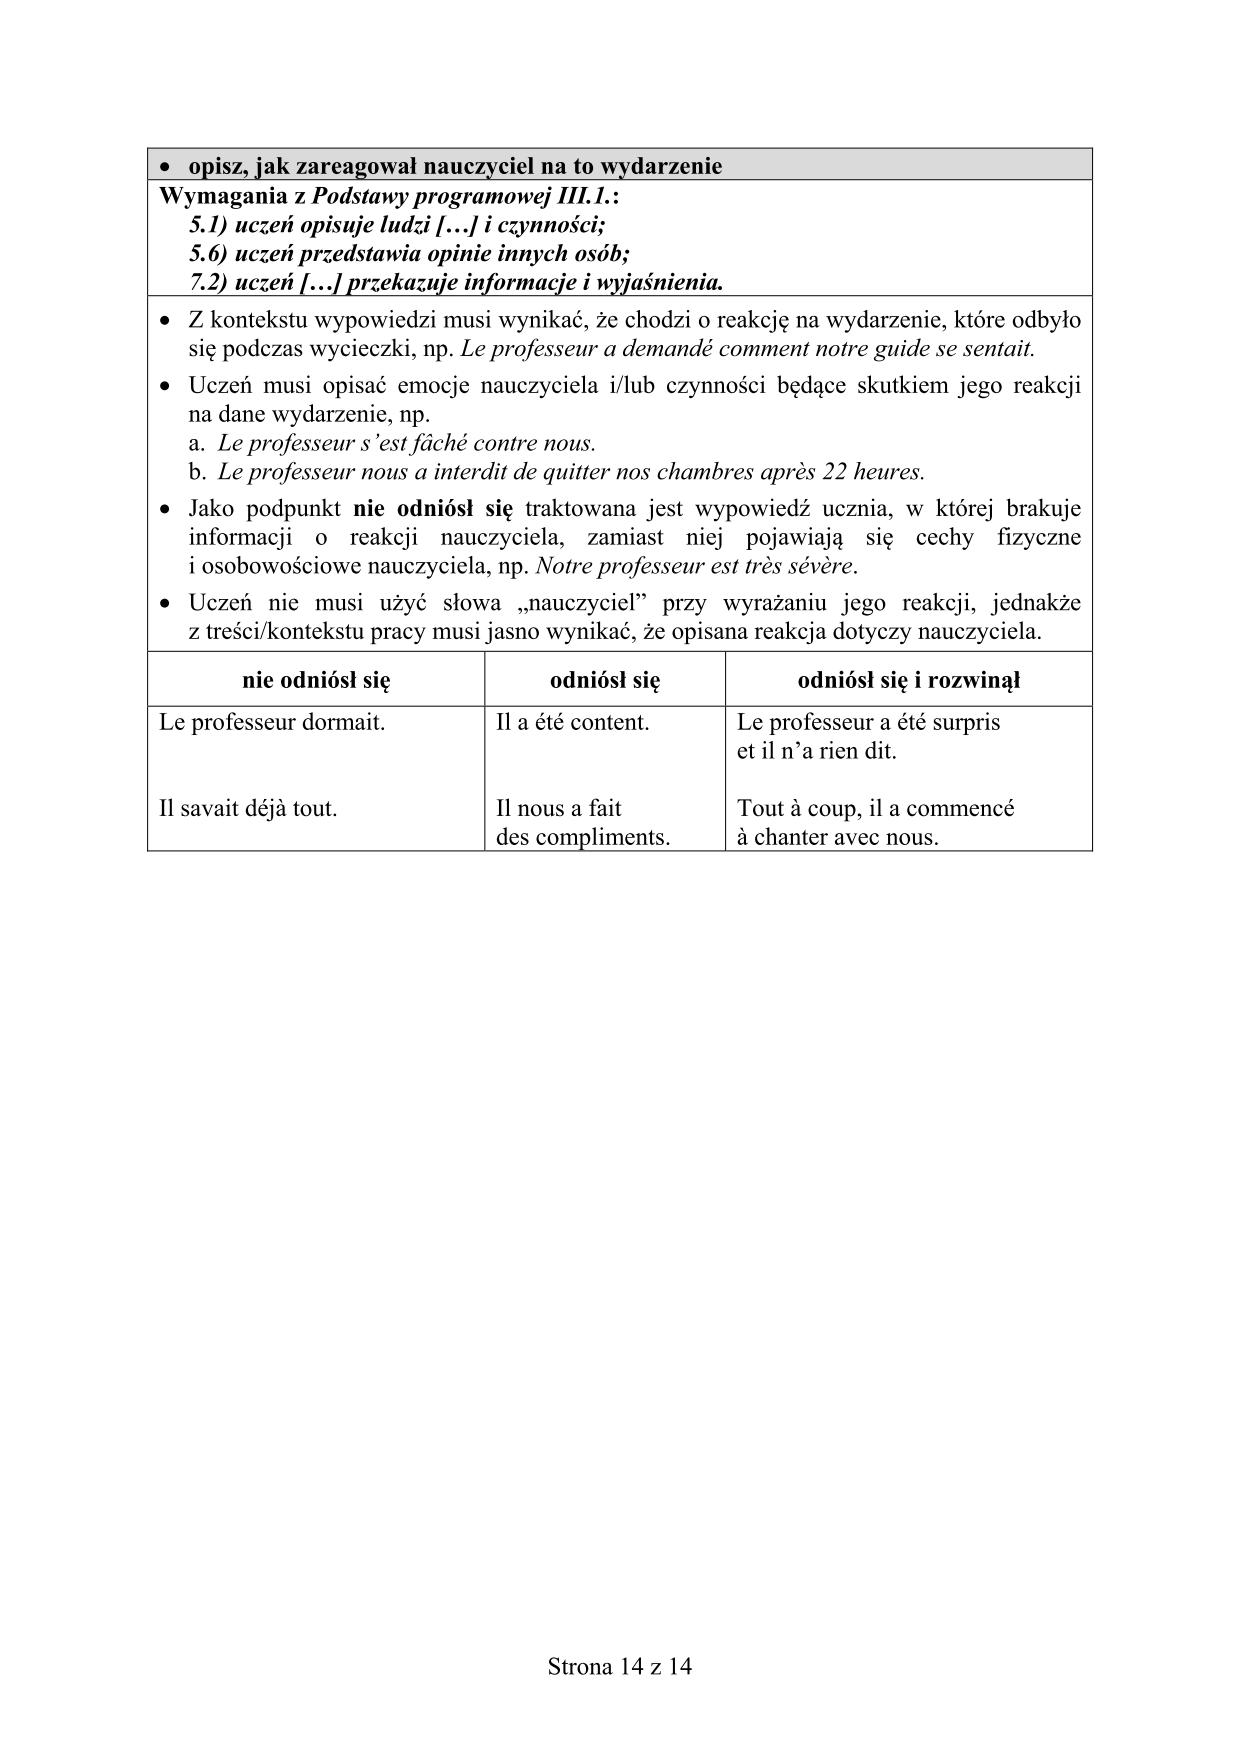 odpowiedzi-francuski-poziom-rozszerzony-egzamin-gimnazjalny-2015-14